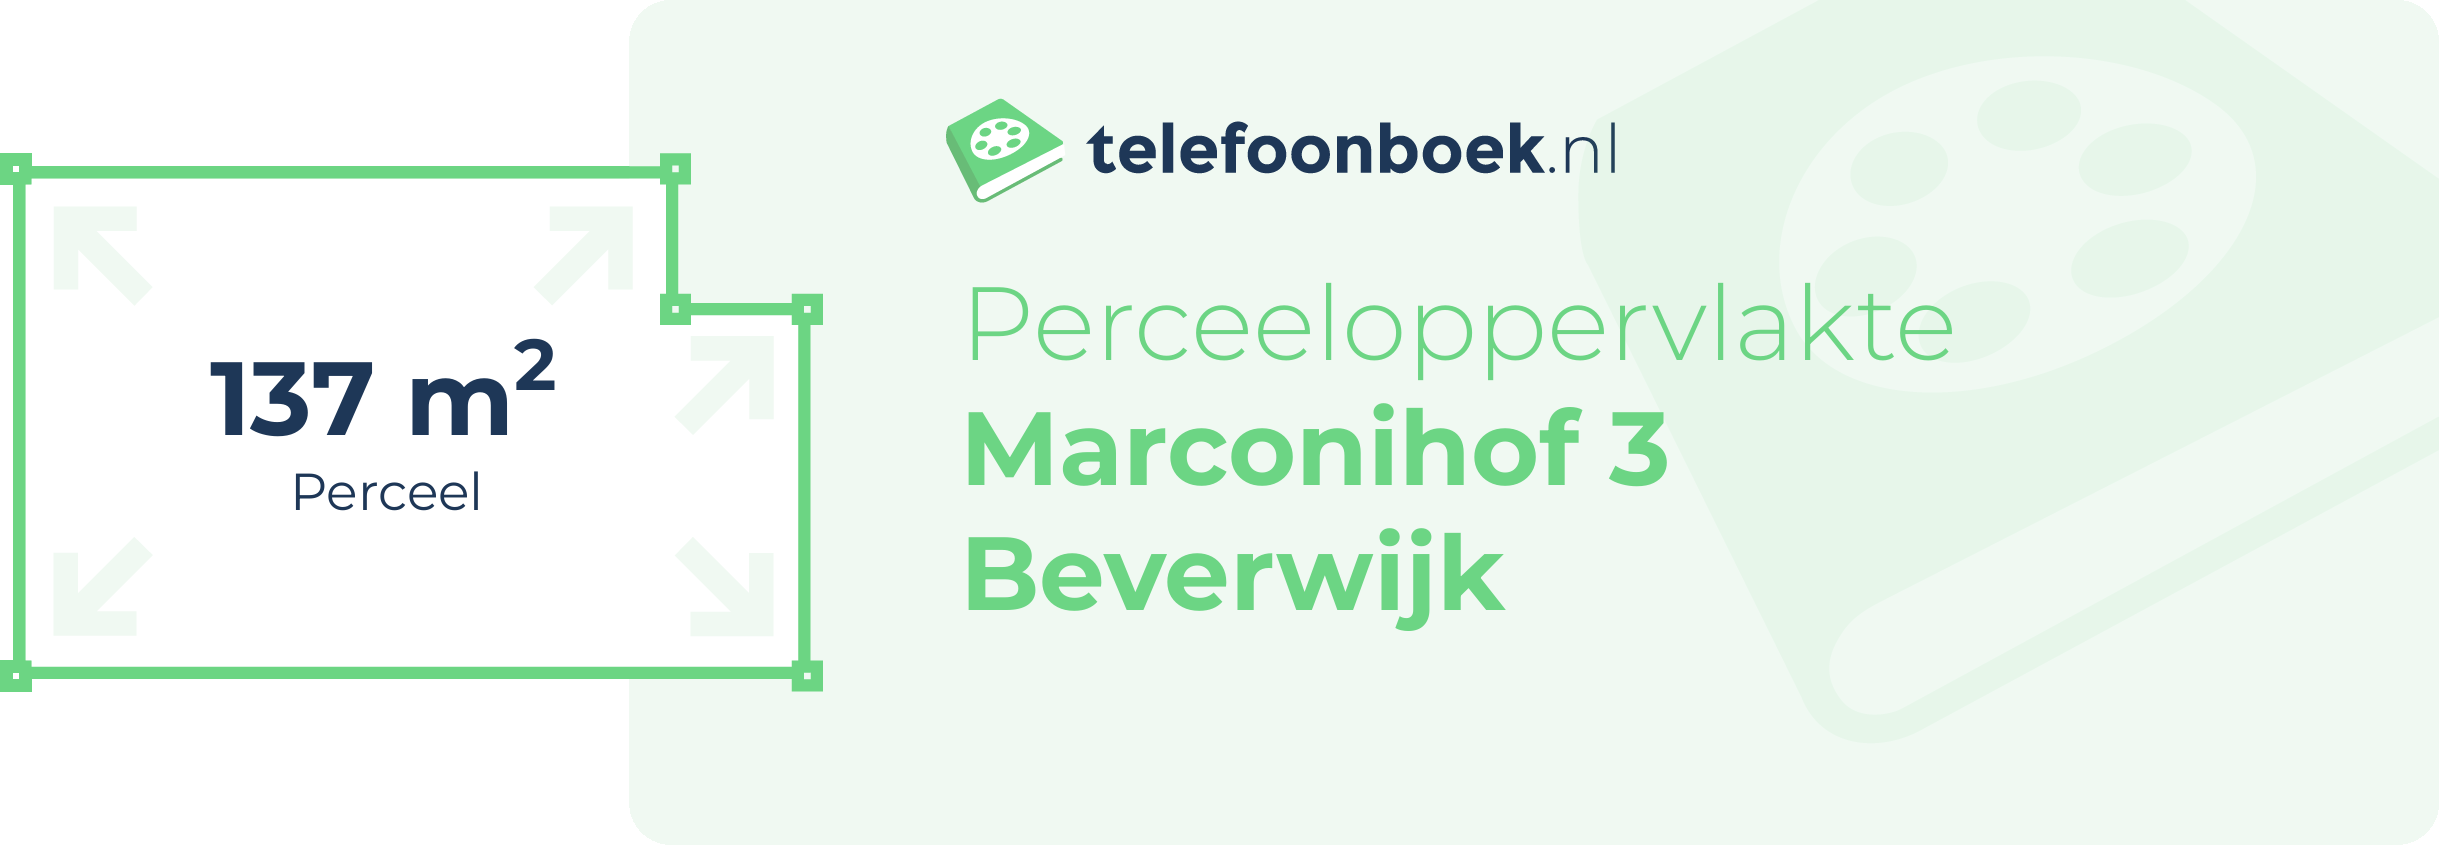 Perceeloppervlakte Marconihof 3 Beverwijk